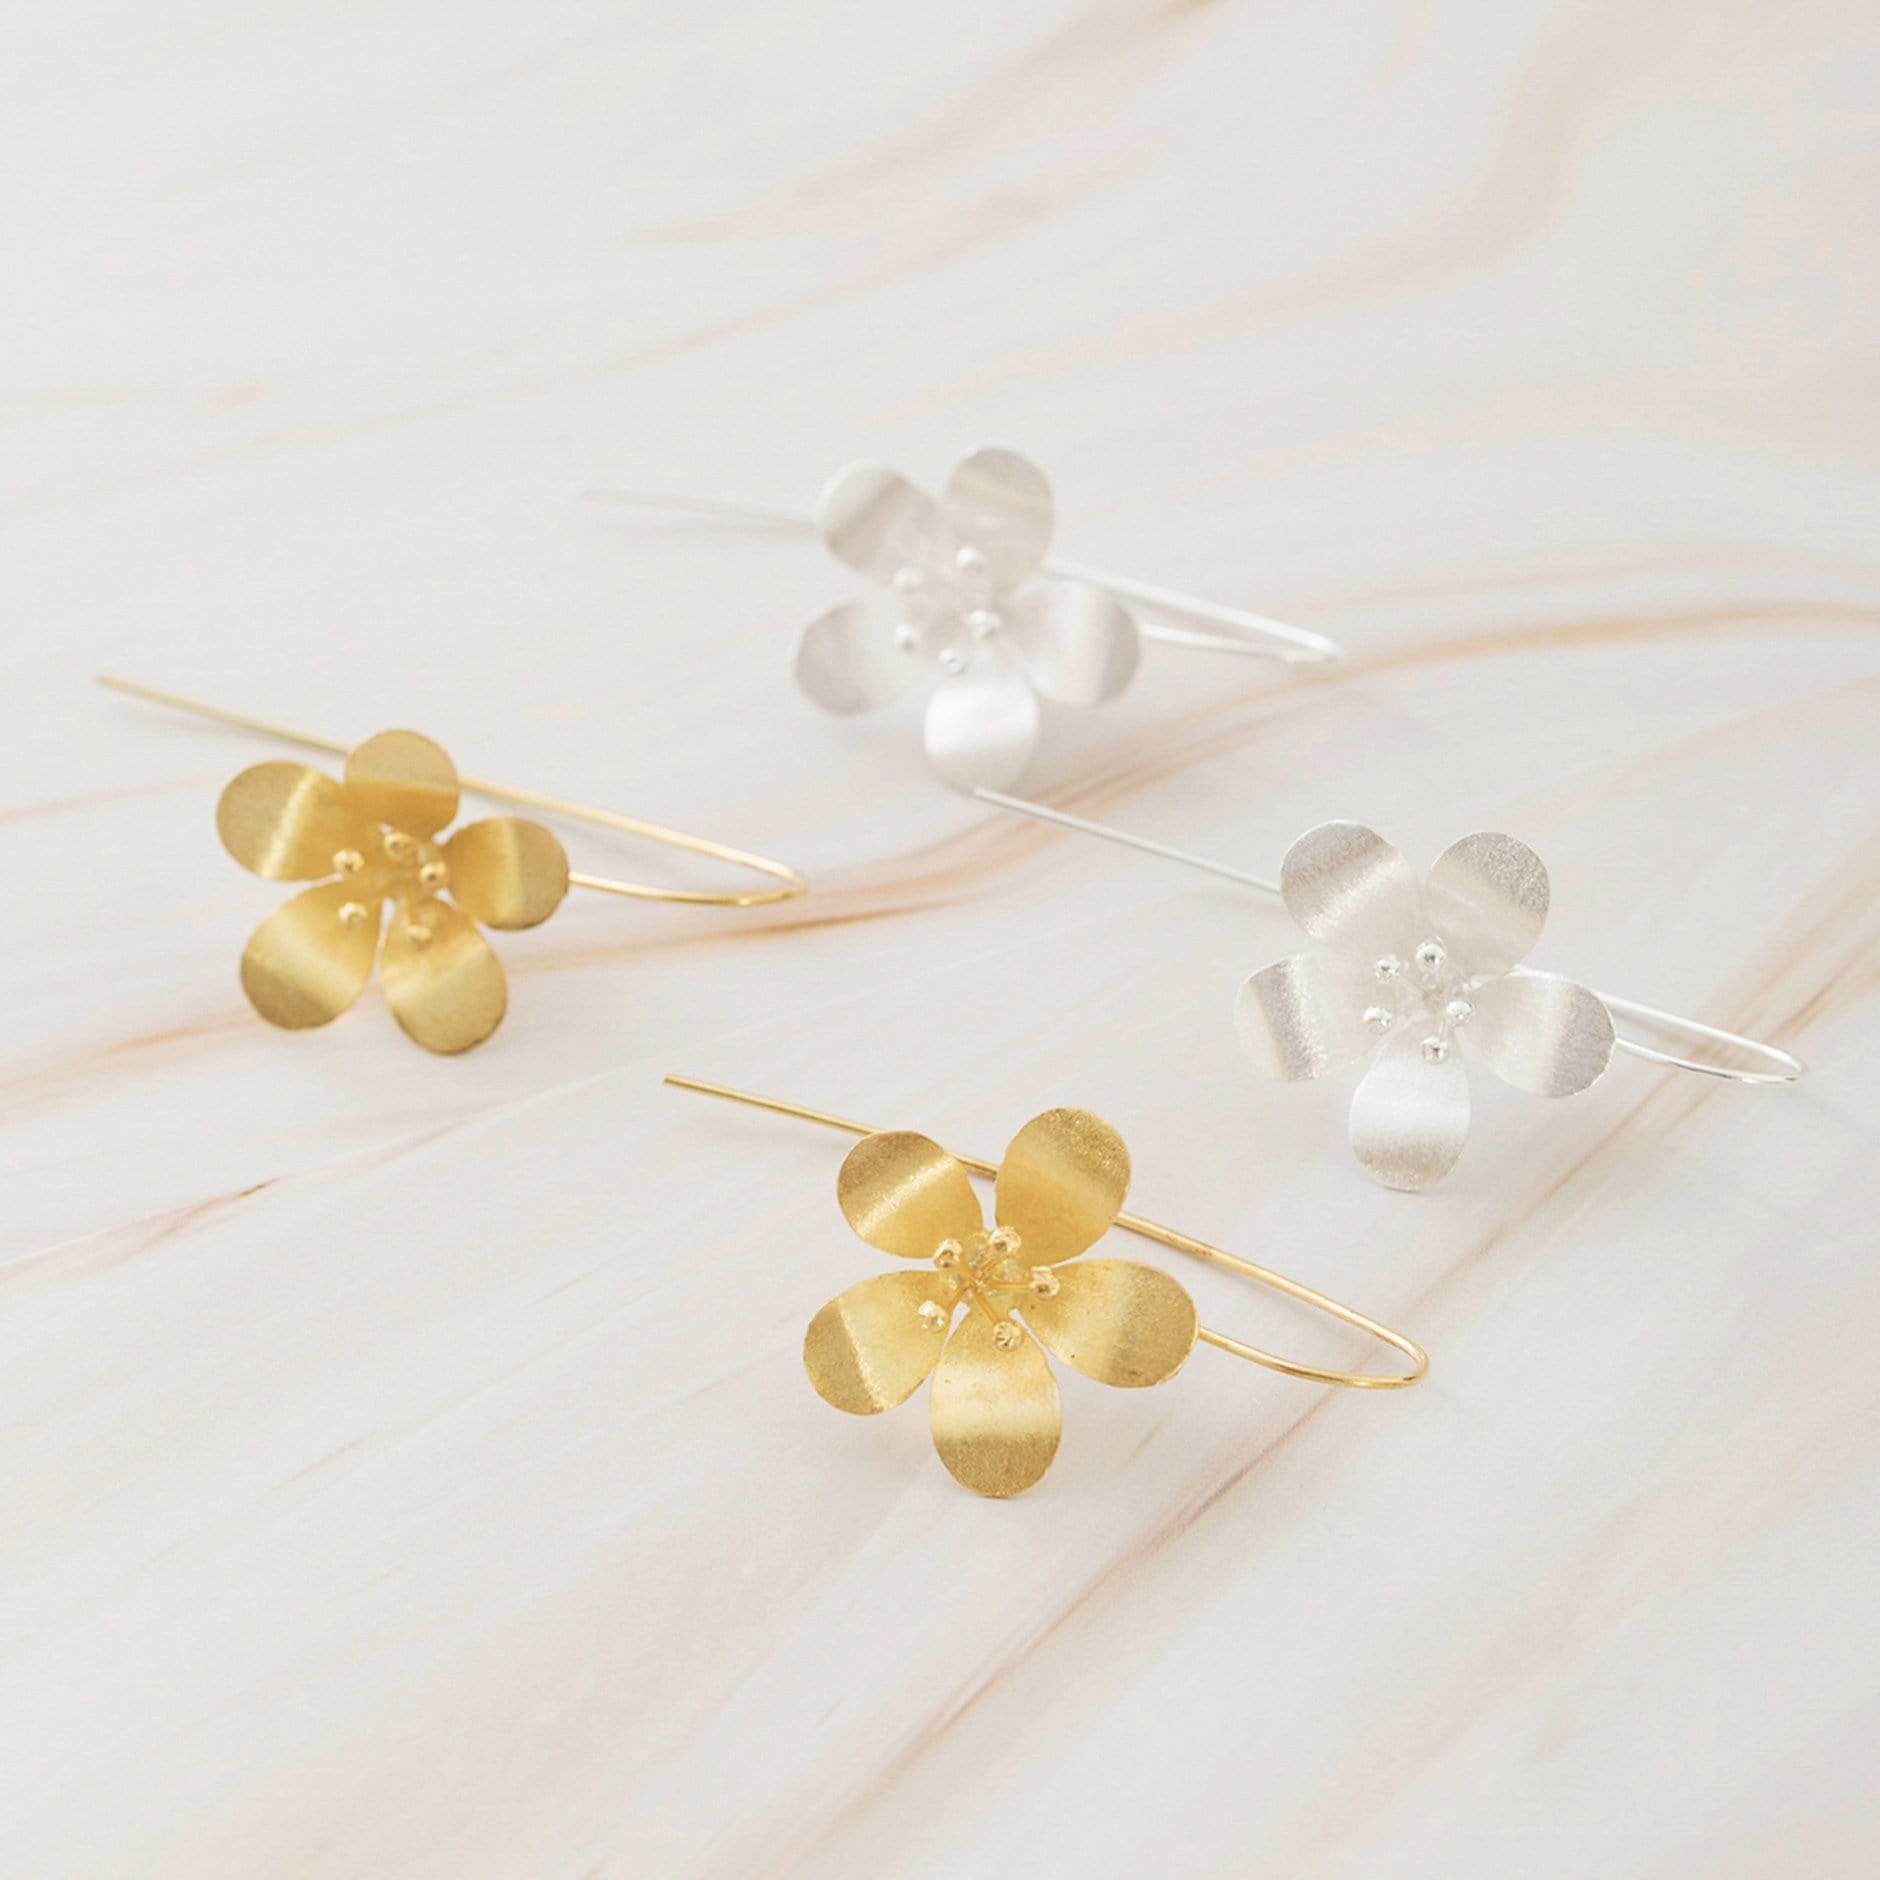 Emblem Jewelry Earrings Sweet Kalachuchi Flower Drop Earrings